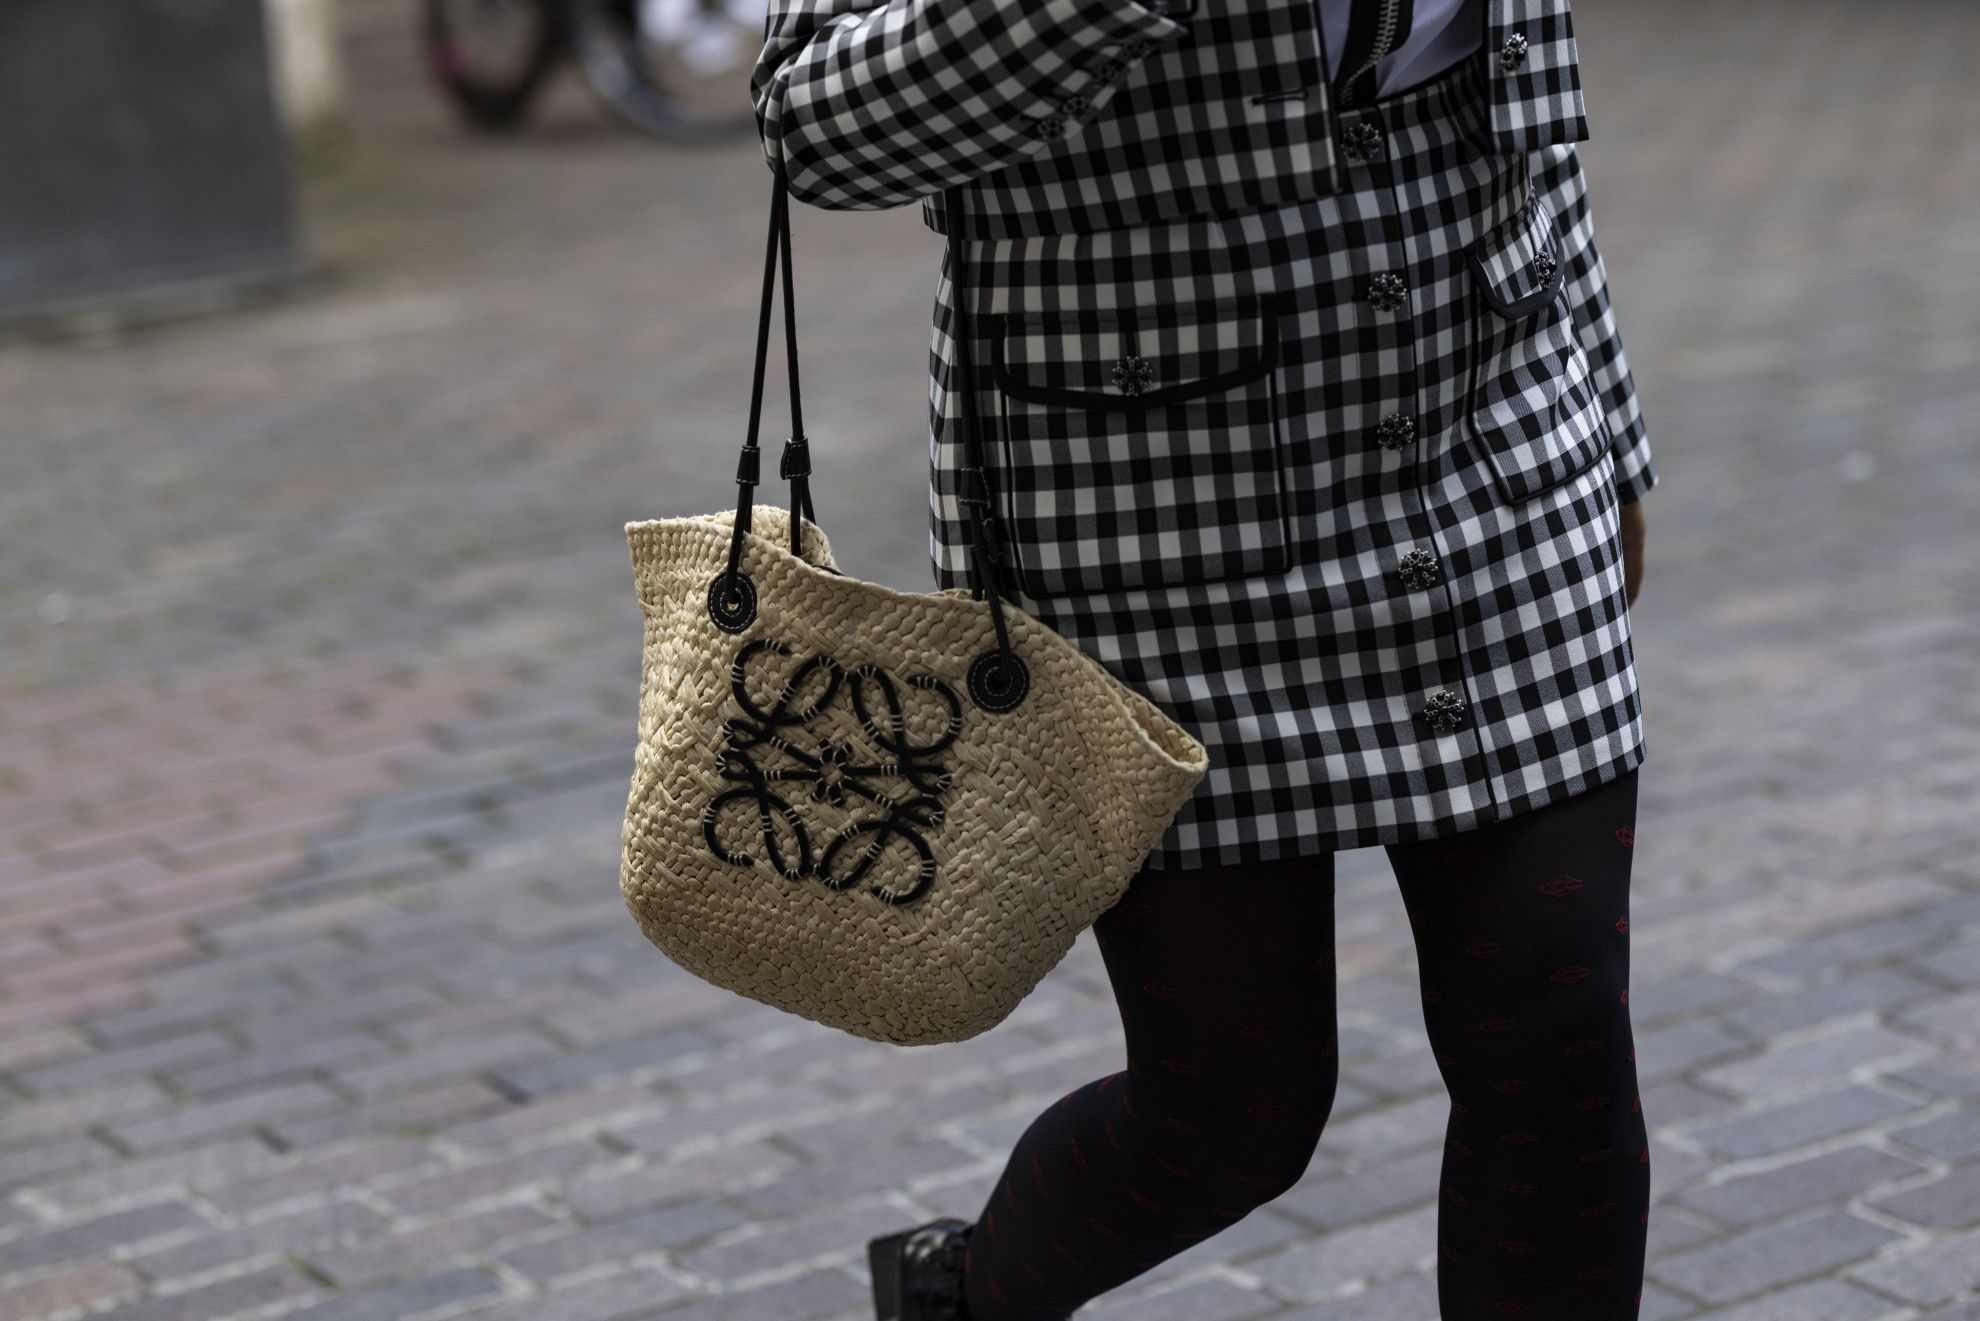 Detalle de un bolso de rafia en el street style.